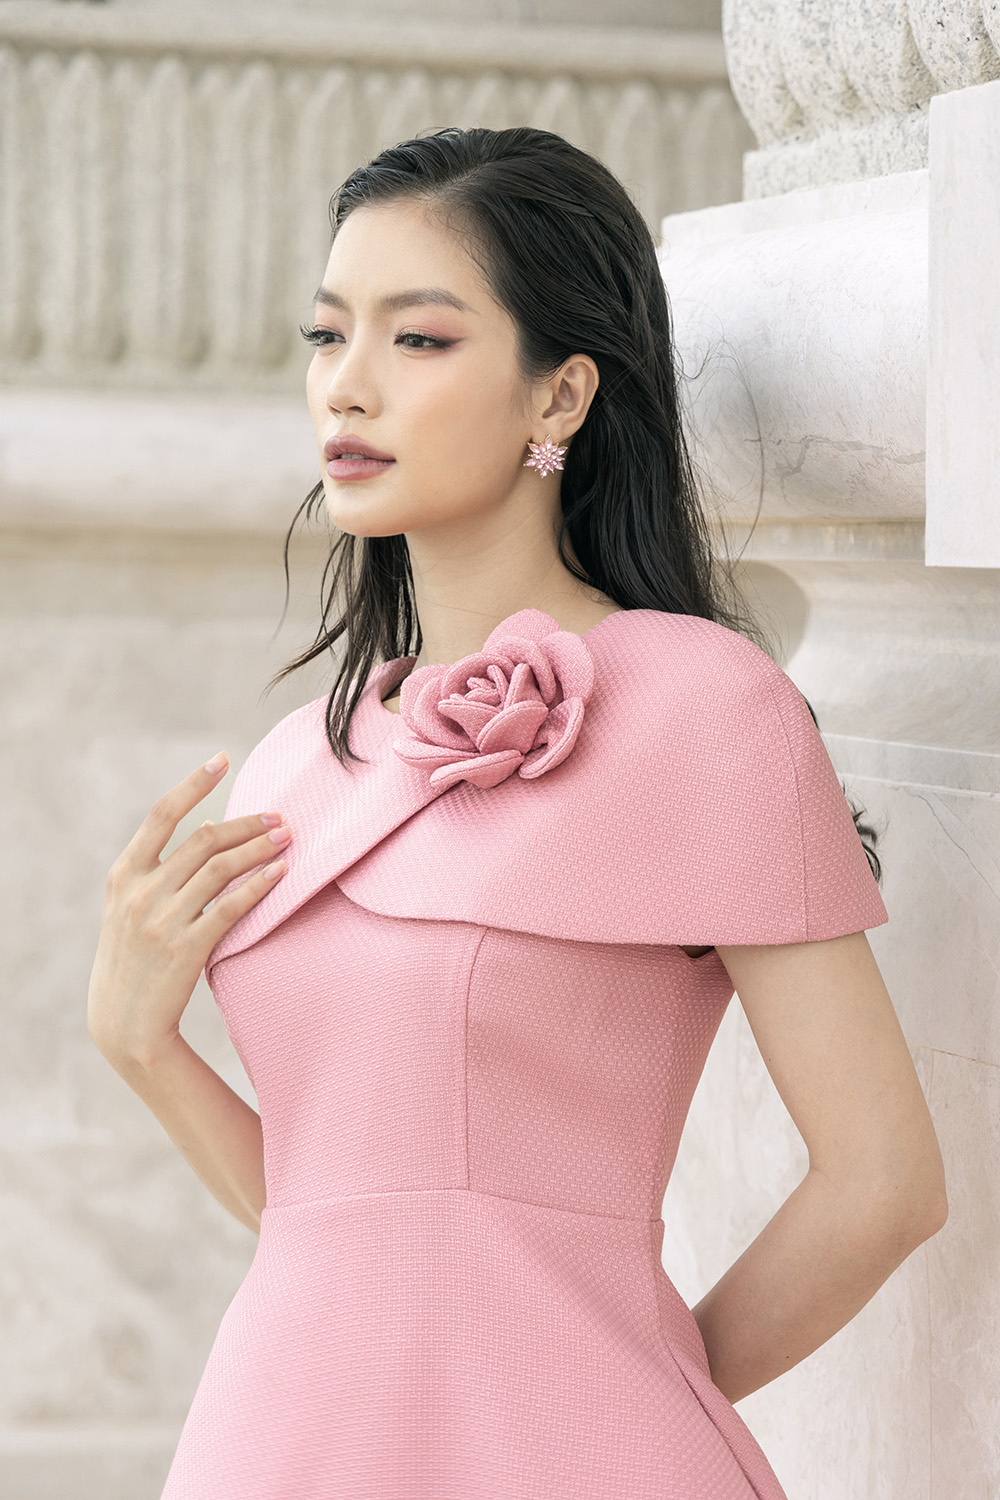 BTS váy hồng công sở siêu xinh cho nàng tỏa sáng vào những ngày Thu nh –  TuTu Store